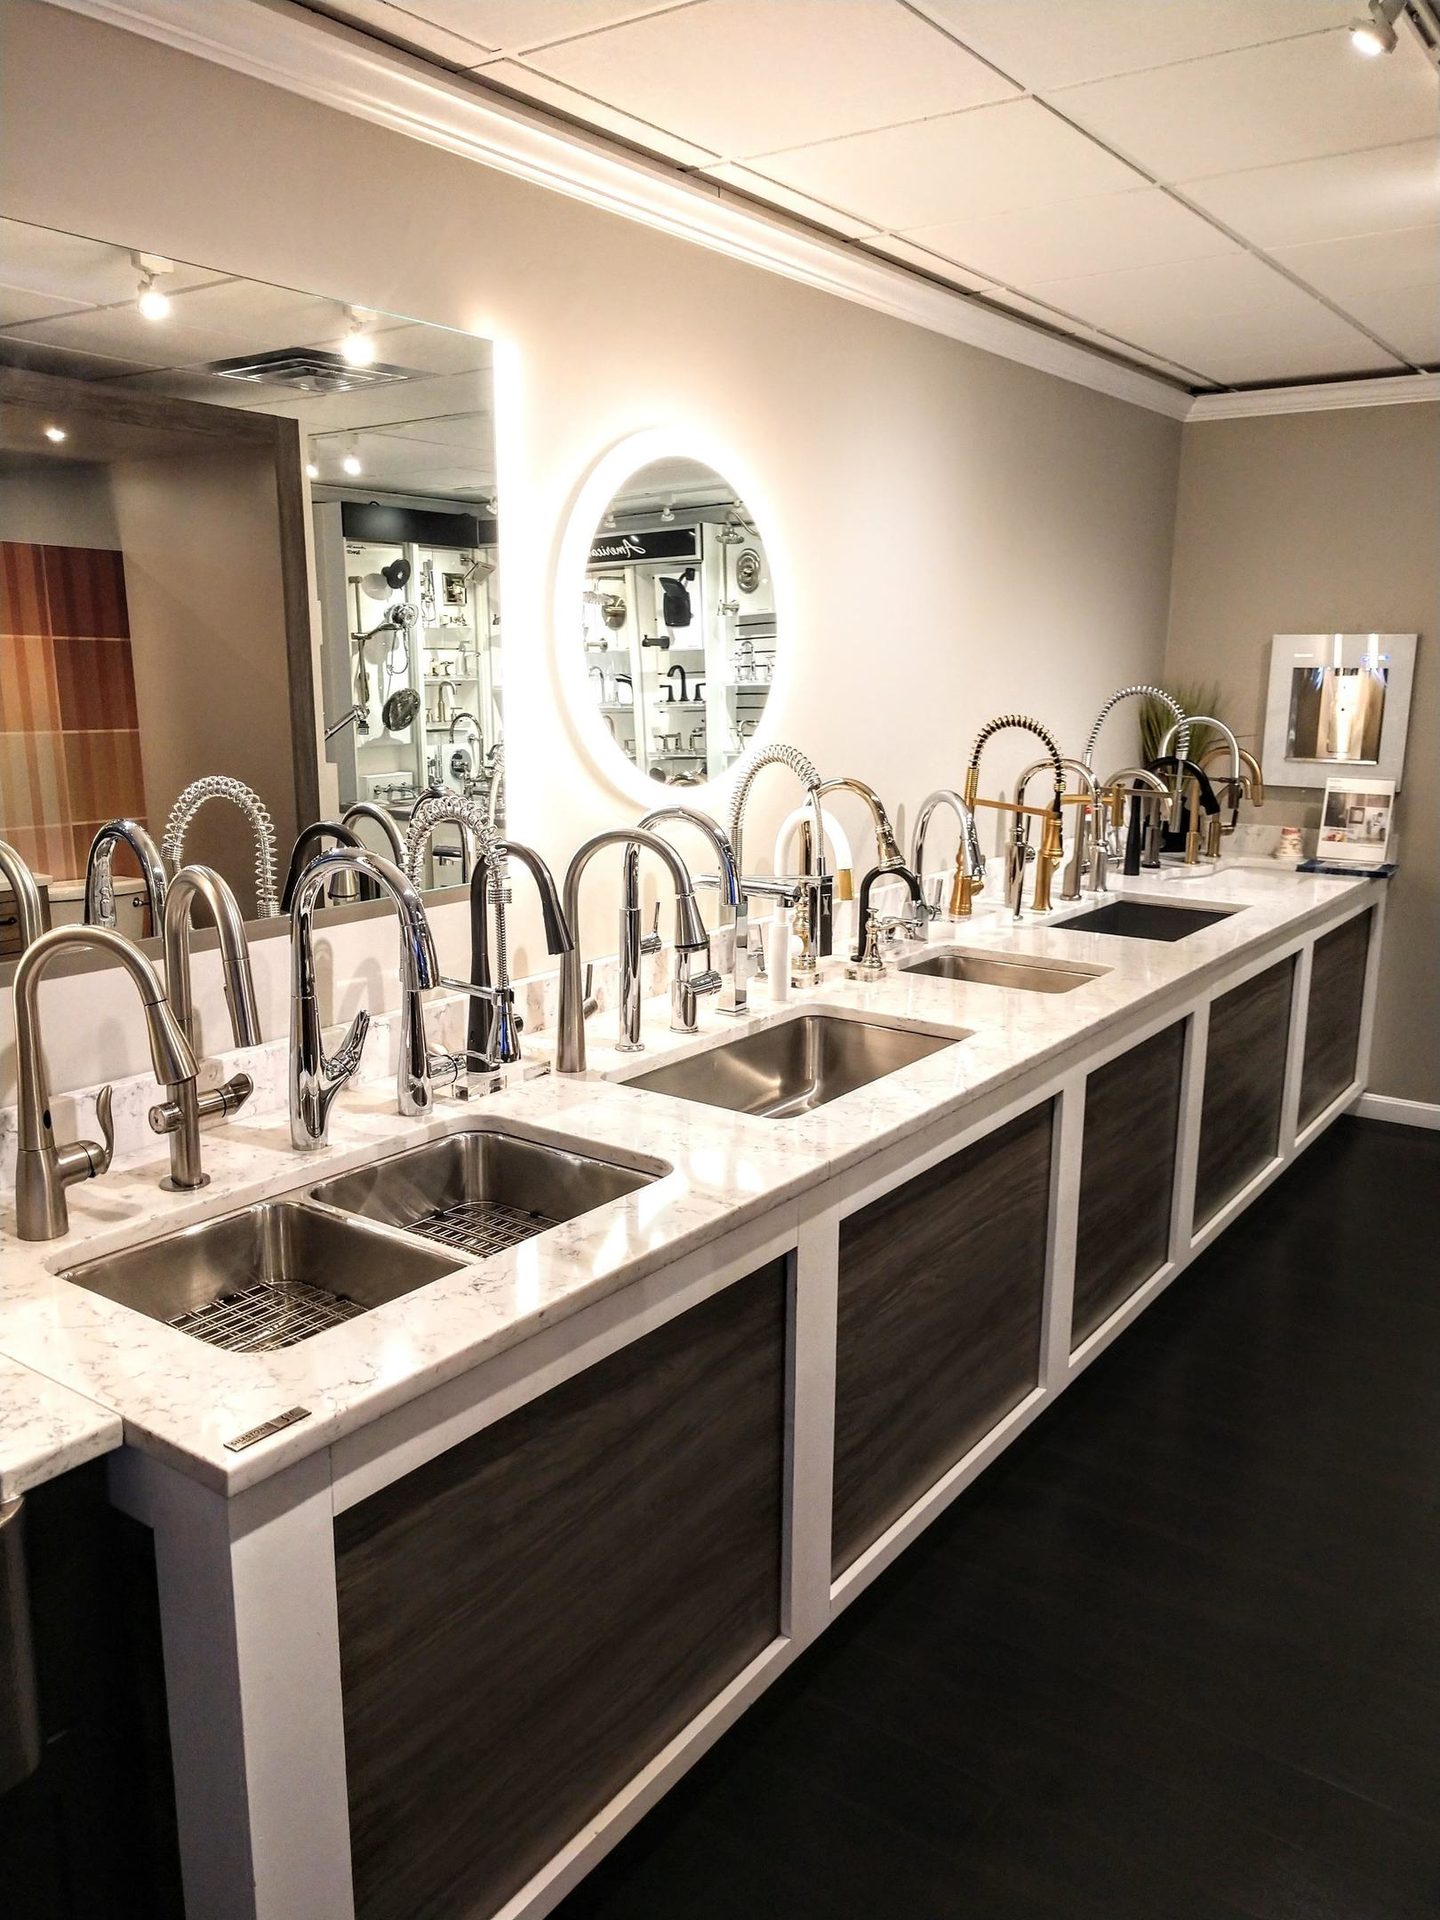 Kitchen sink, Plumbing fixture, Interior design, Tap, Mirror, Countertop, Wood, Cabinetry, Flooring